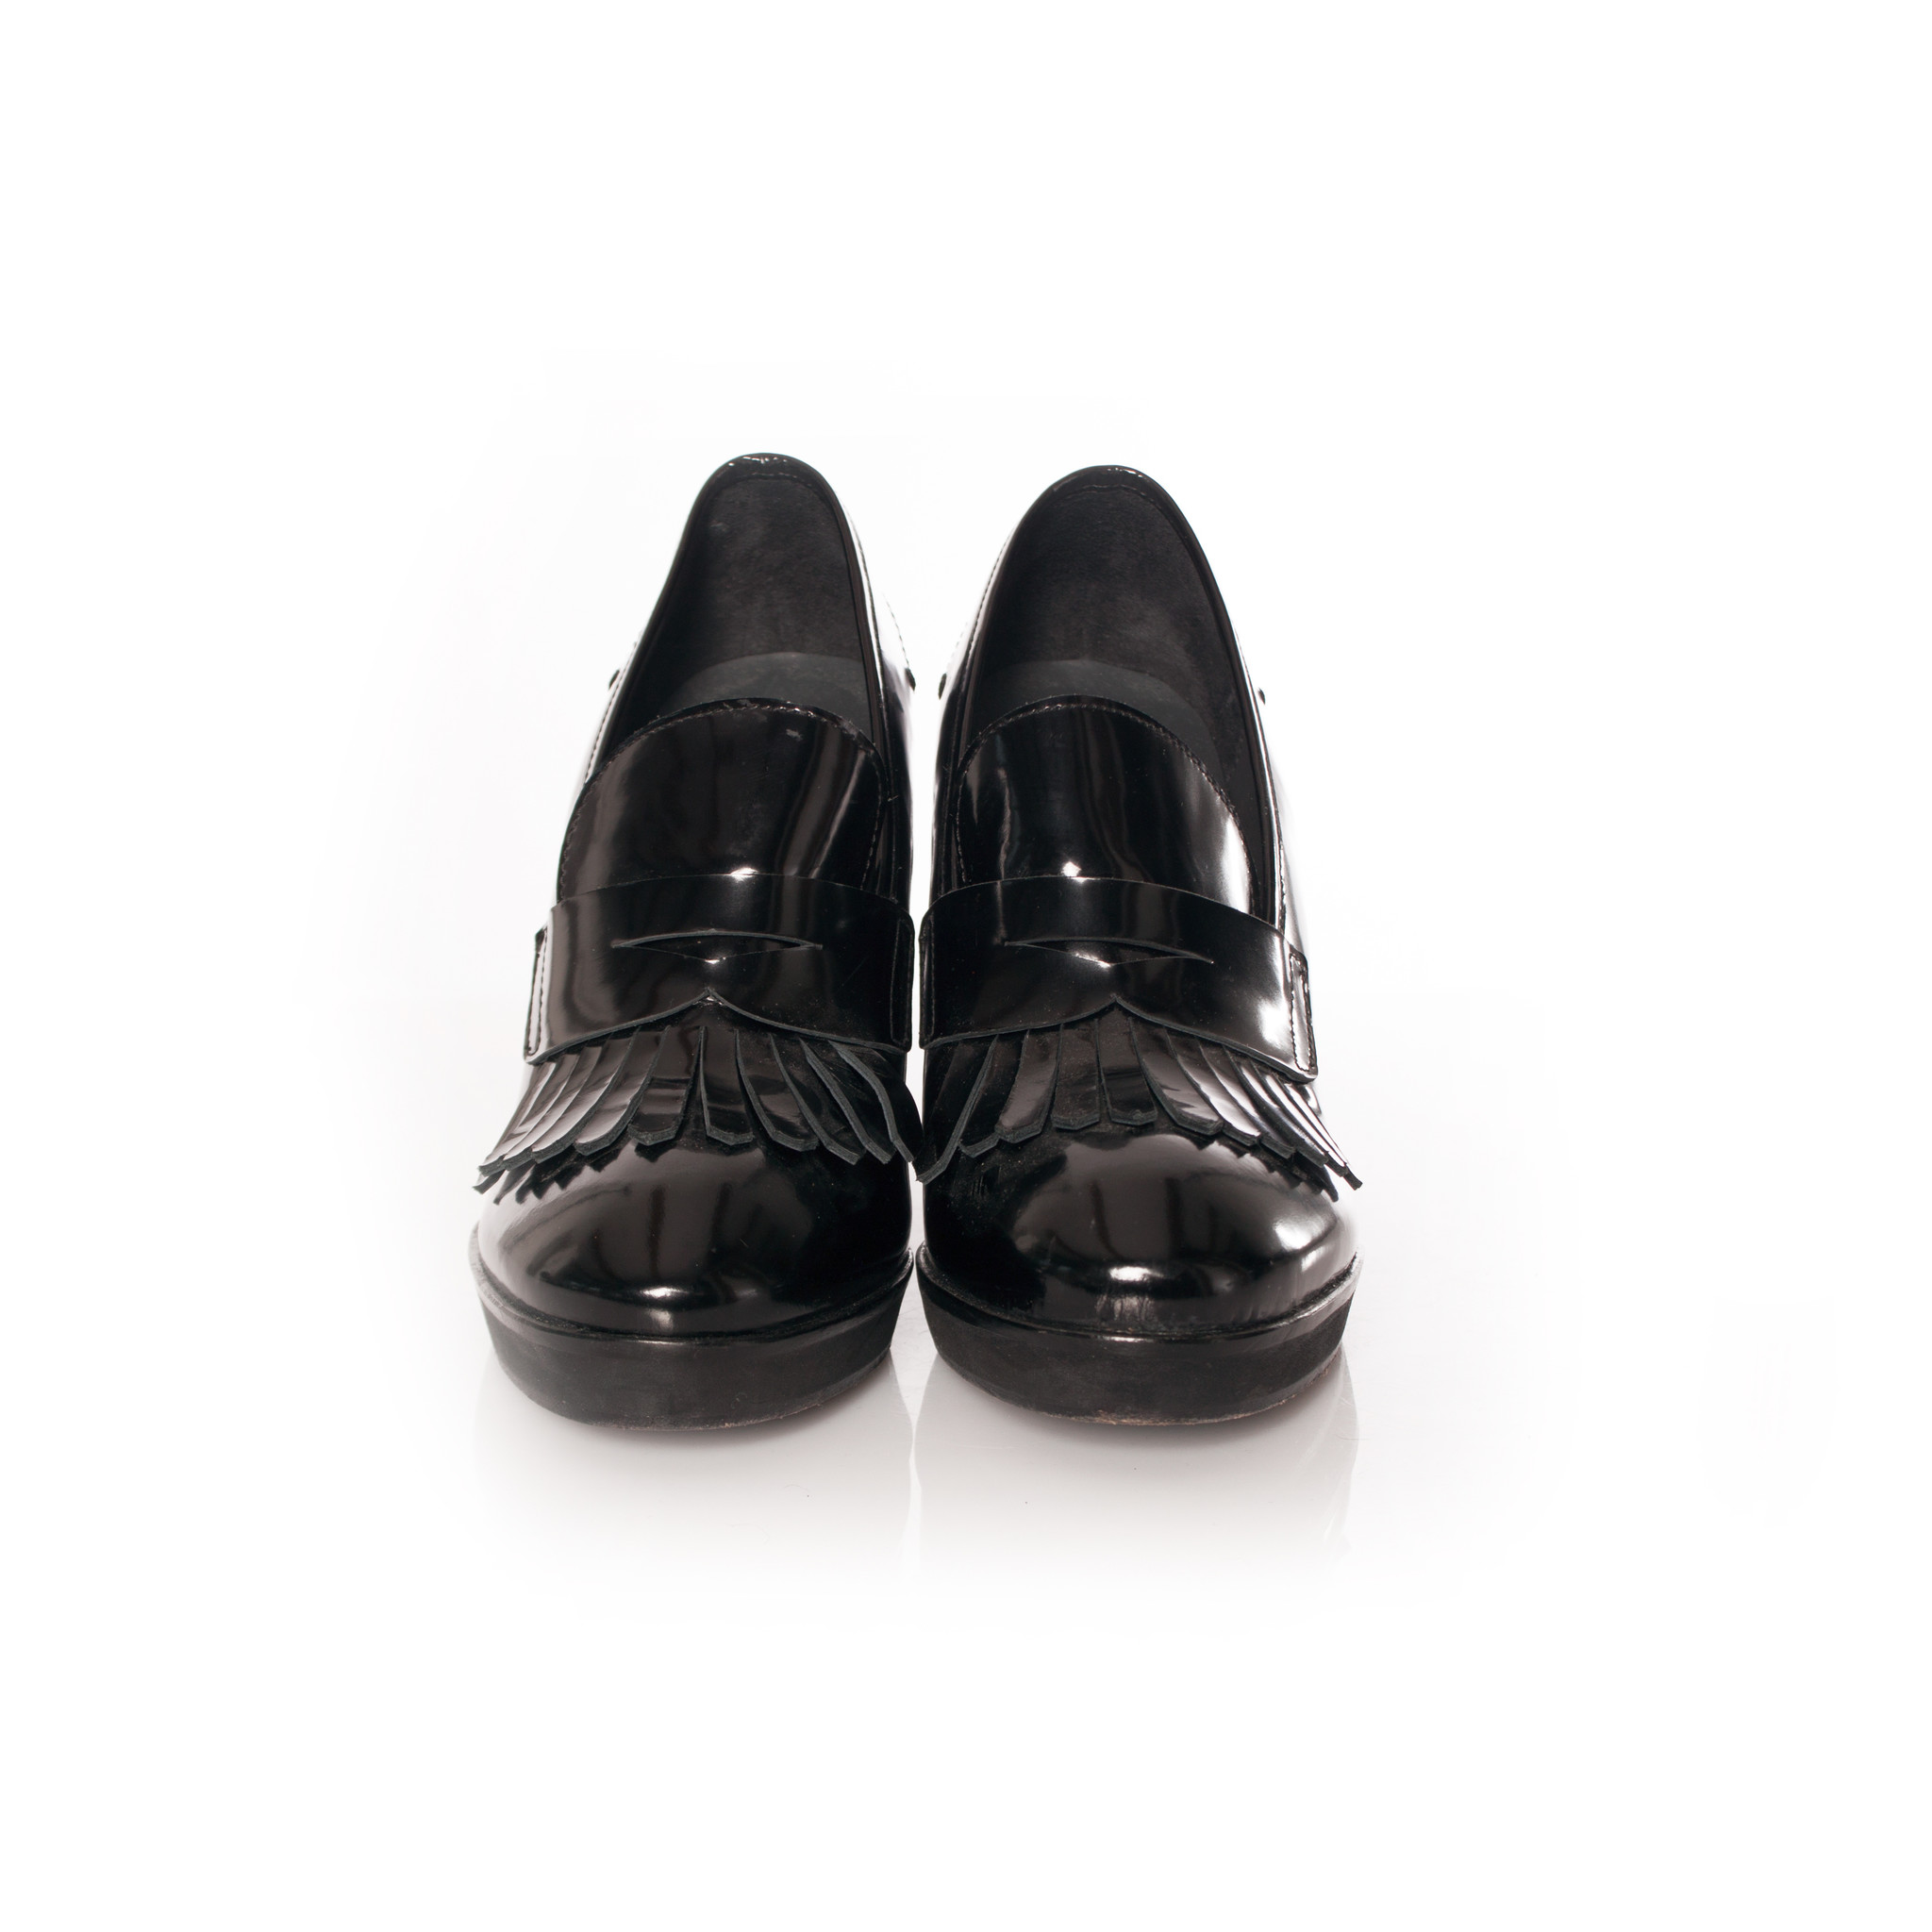 Louis Feraud Leather Pumps - Black Pumps, Shoes - WLOFE21890